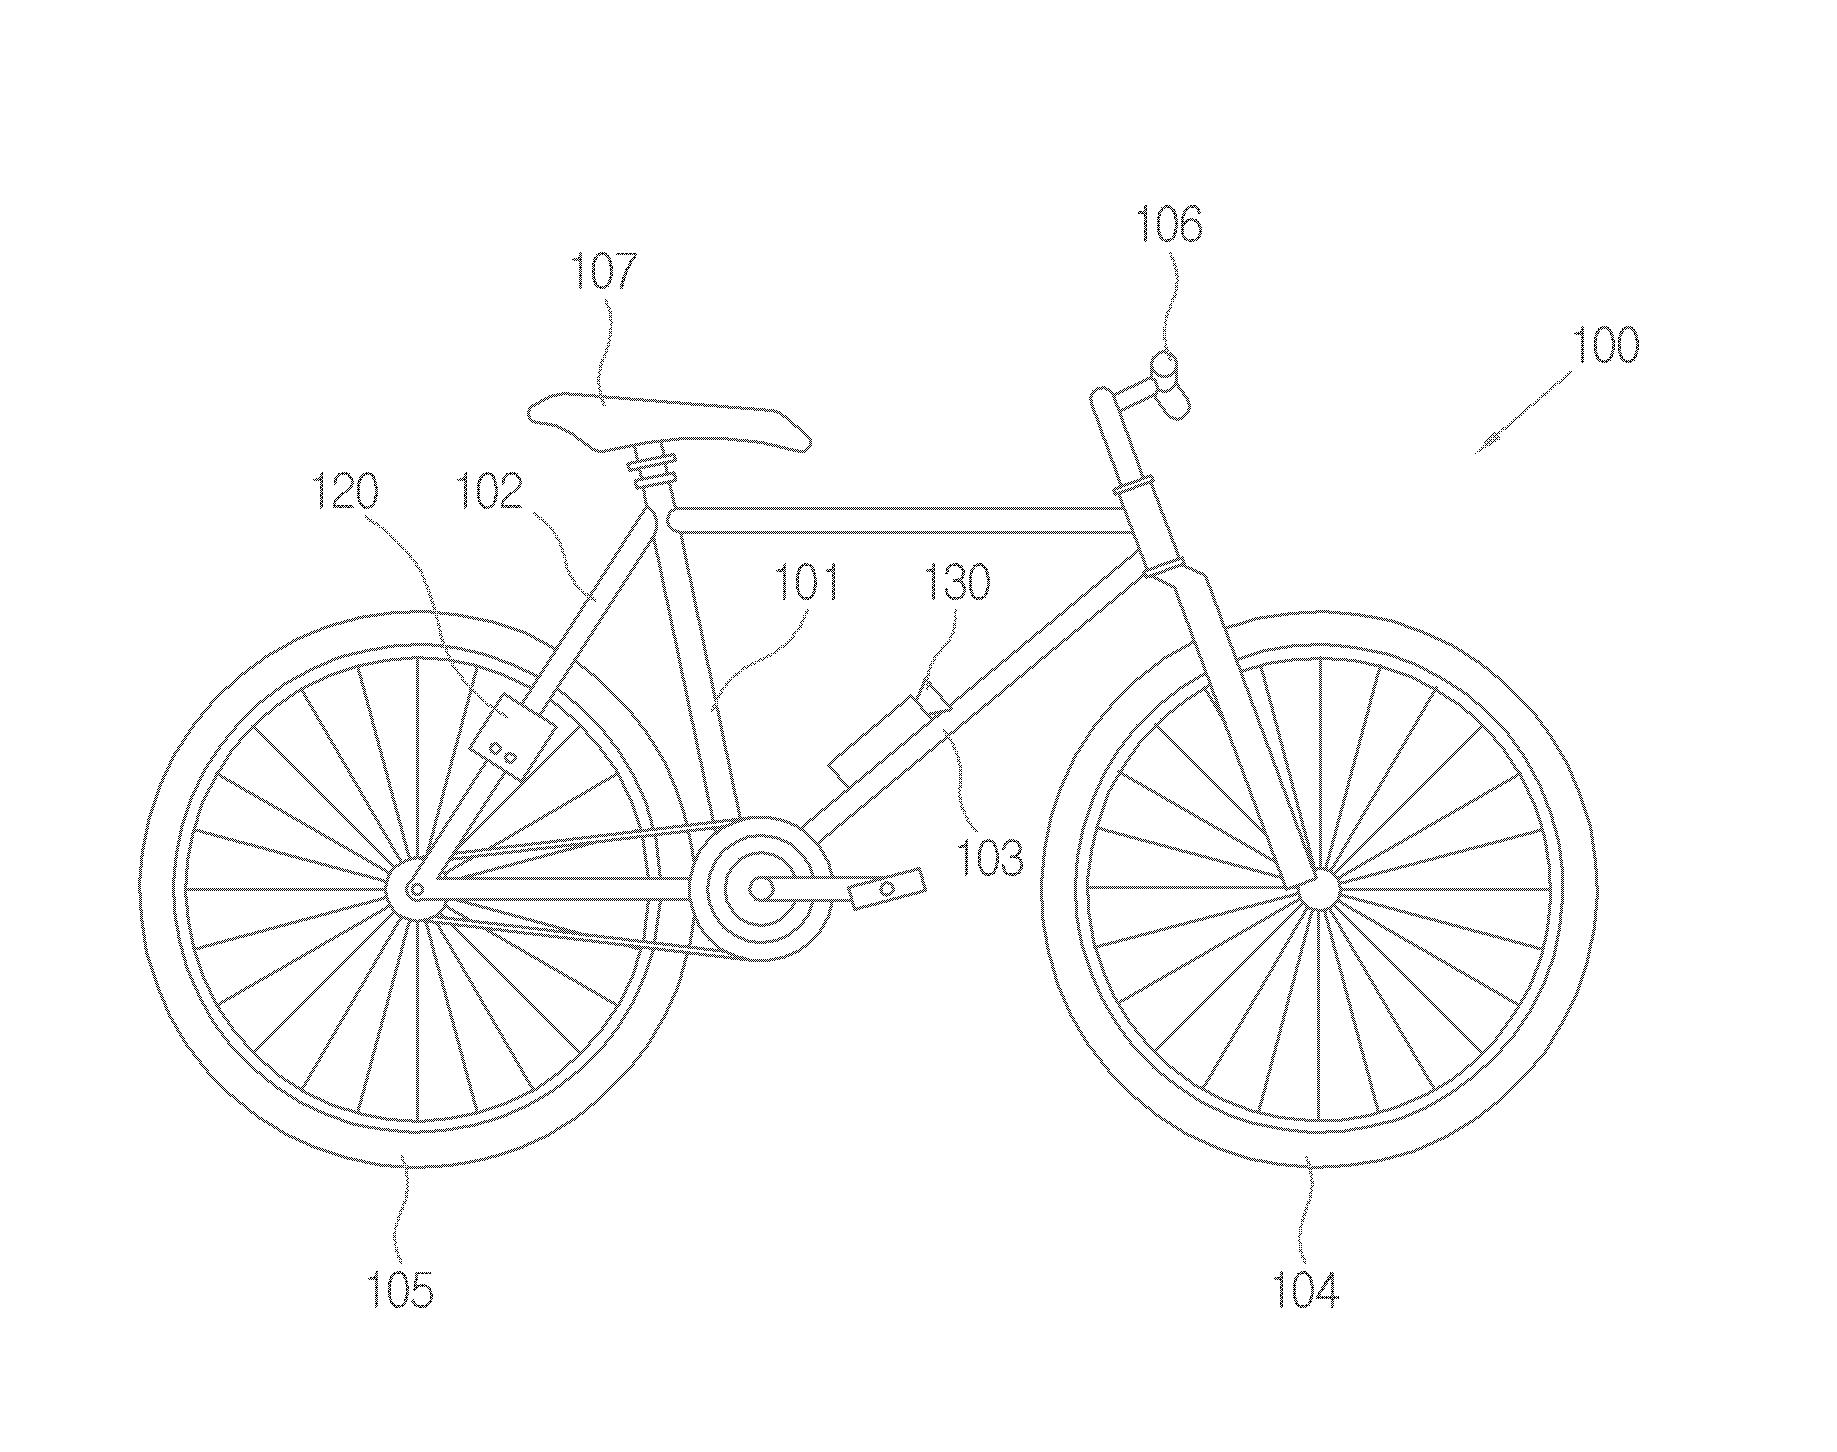 ＲＦ ＩＤ를 이용하여 사용자 식별이 가능한 자전거 대표 이미지